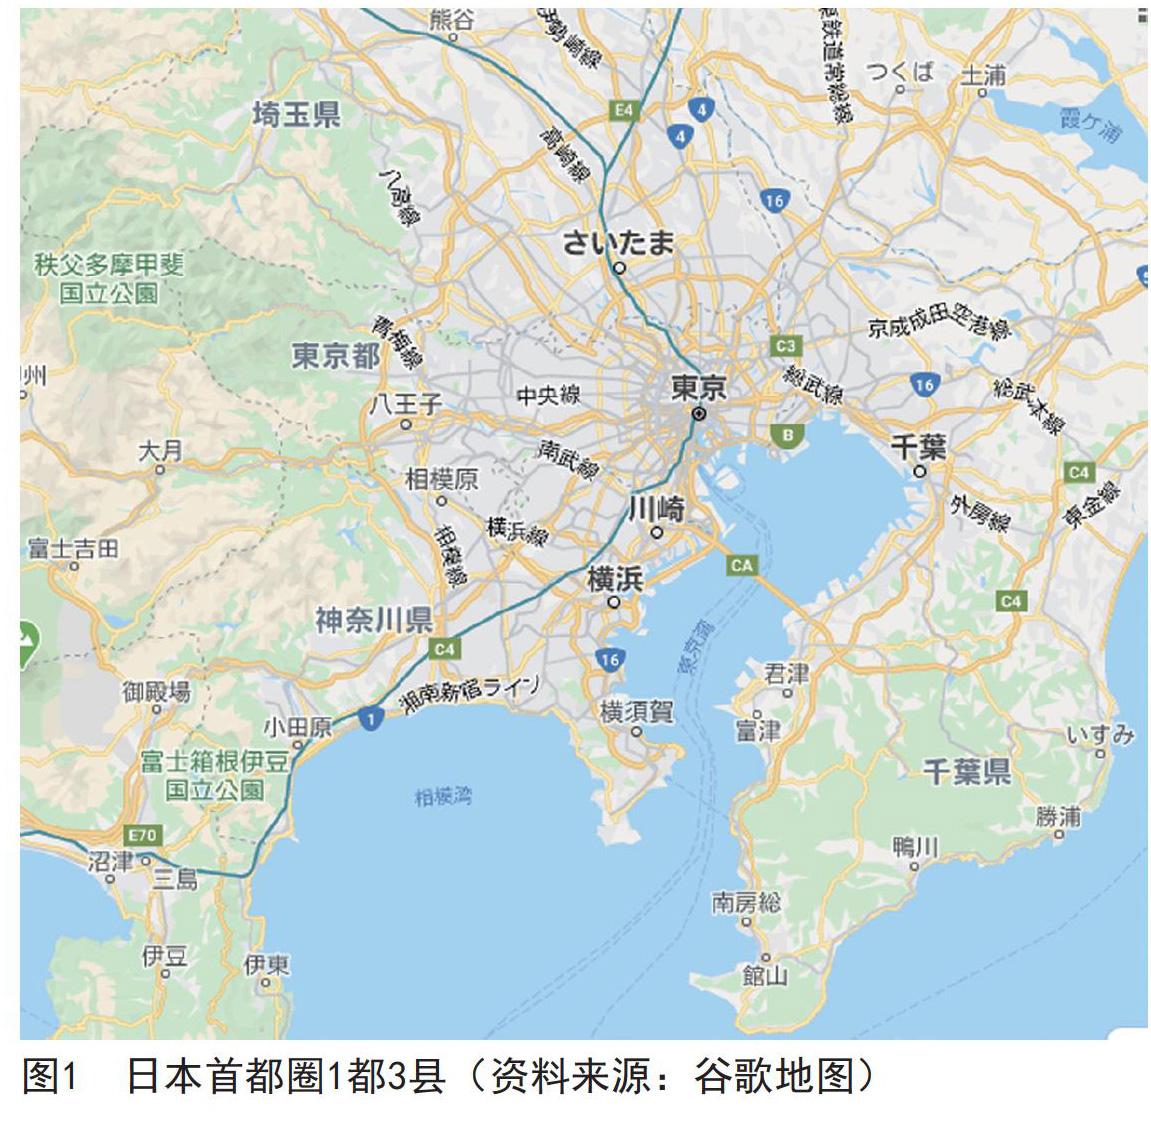 日本首都圈和东京湾区的发展历程与动因及其启示 参考网